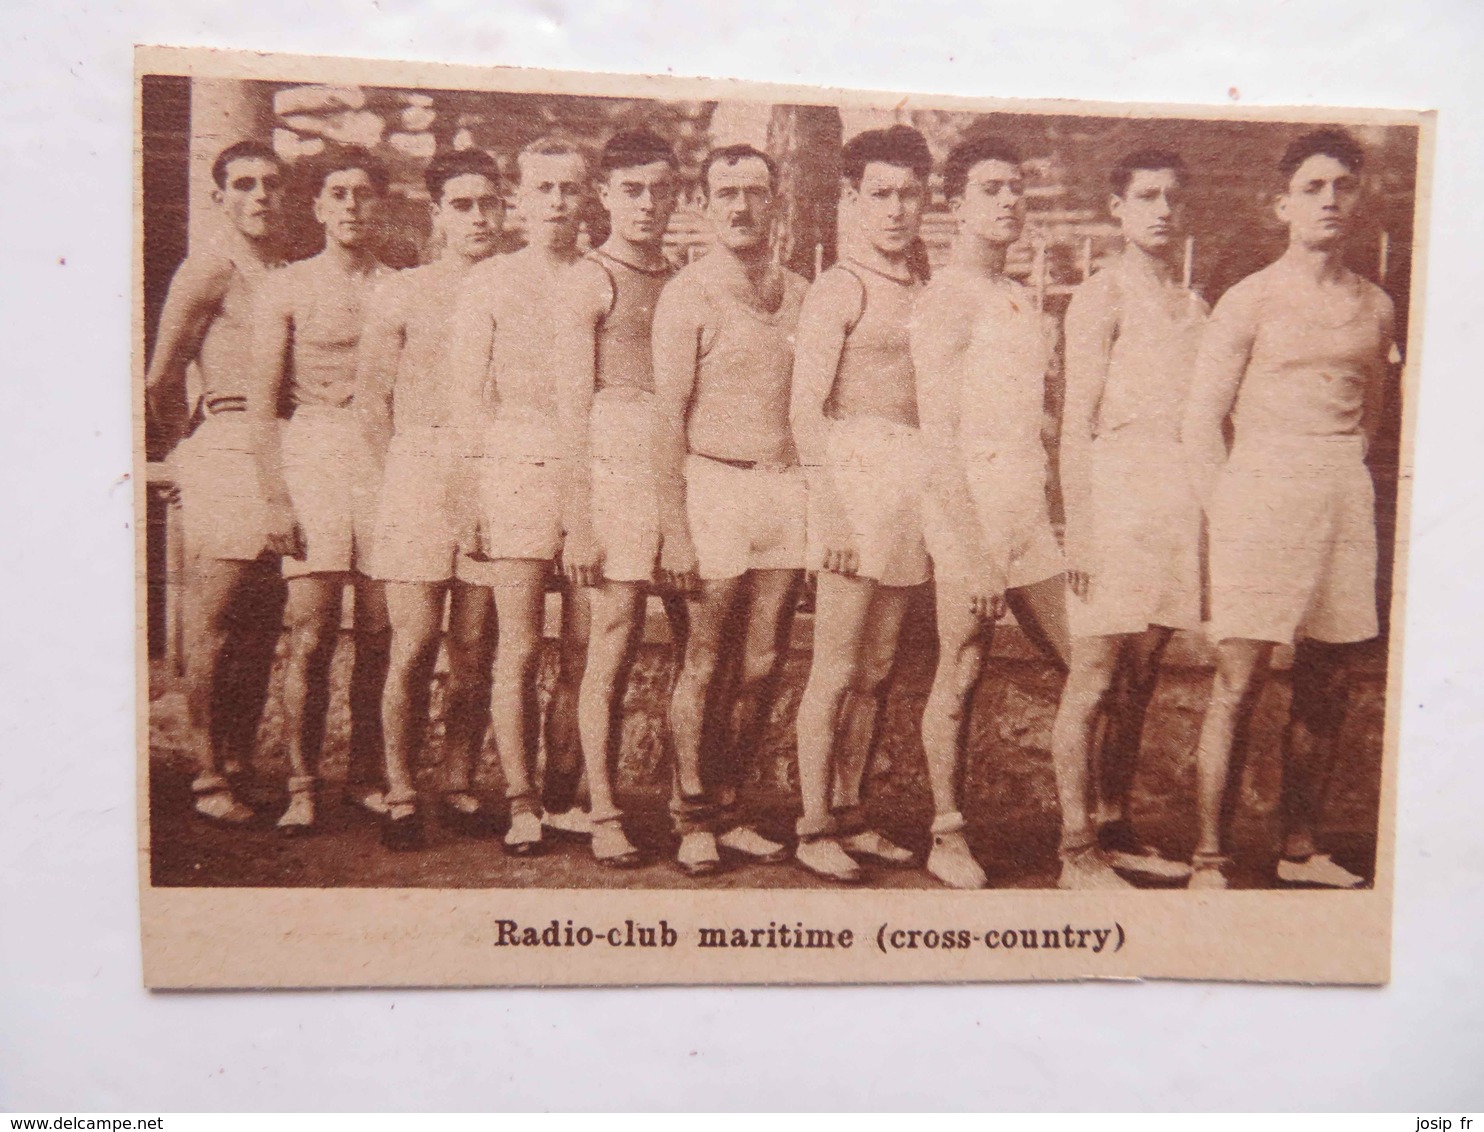 RADIO-CLUB MARITIME ÉQUIPE DE CROSS-COUNTRY— PHOTO DE JOURNAL: 08/1932 - Bateaux